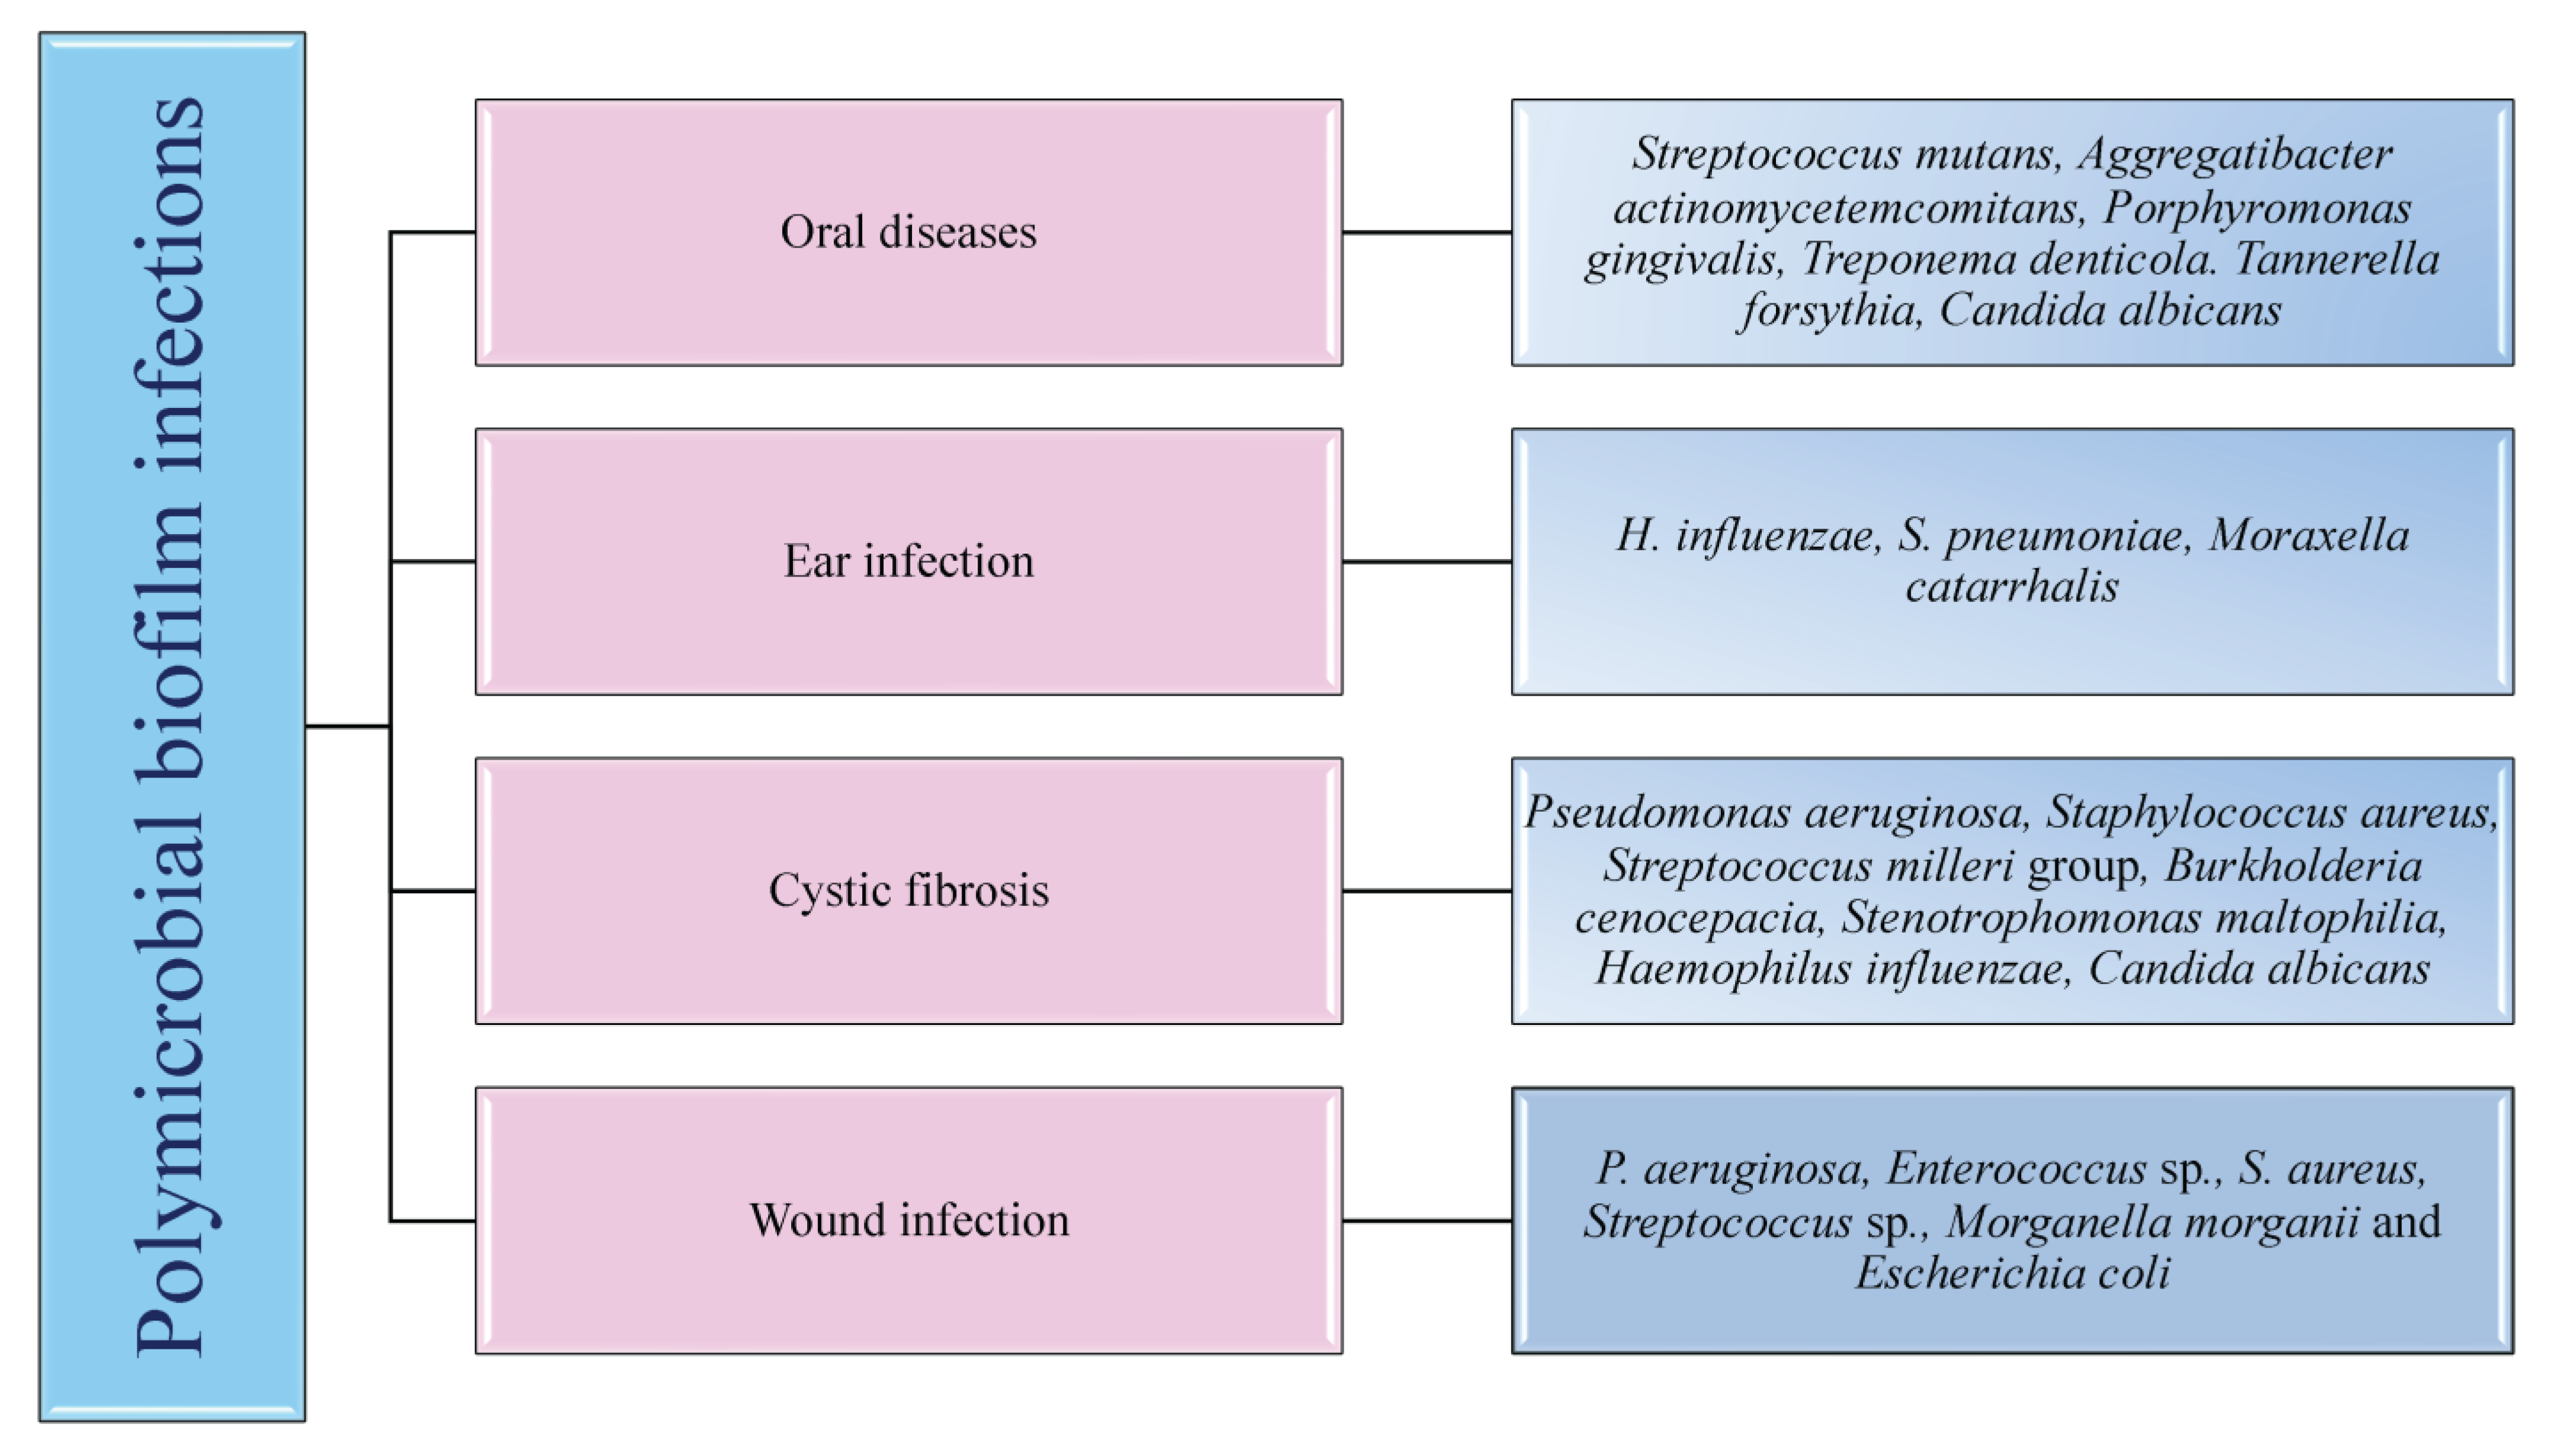 Staphylococcus aureus: symptoms, transferability, treatment